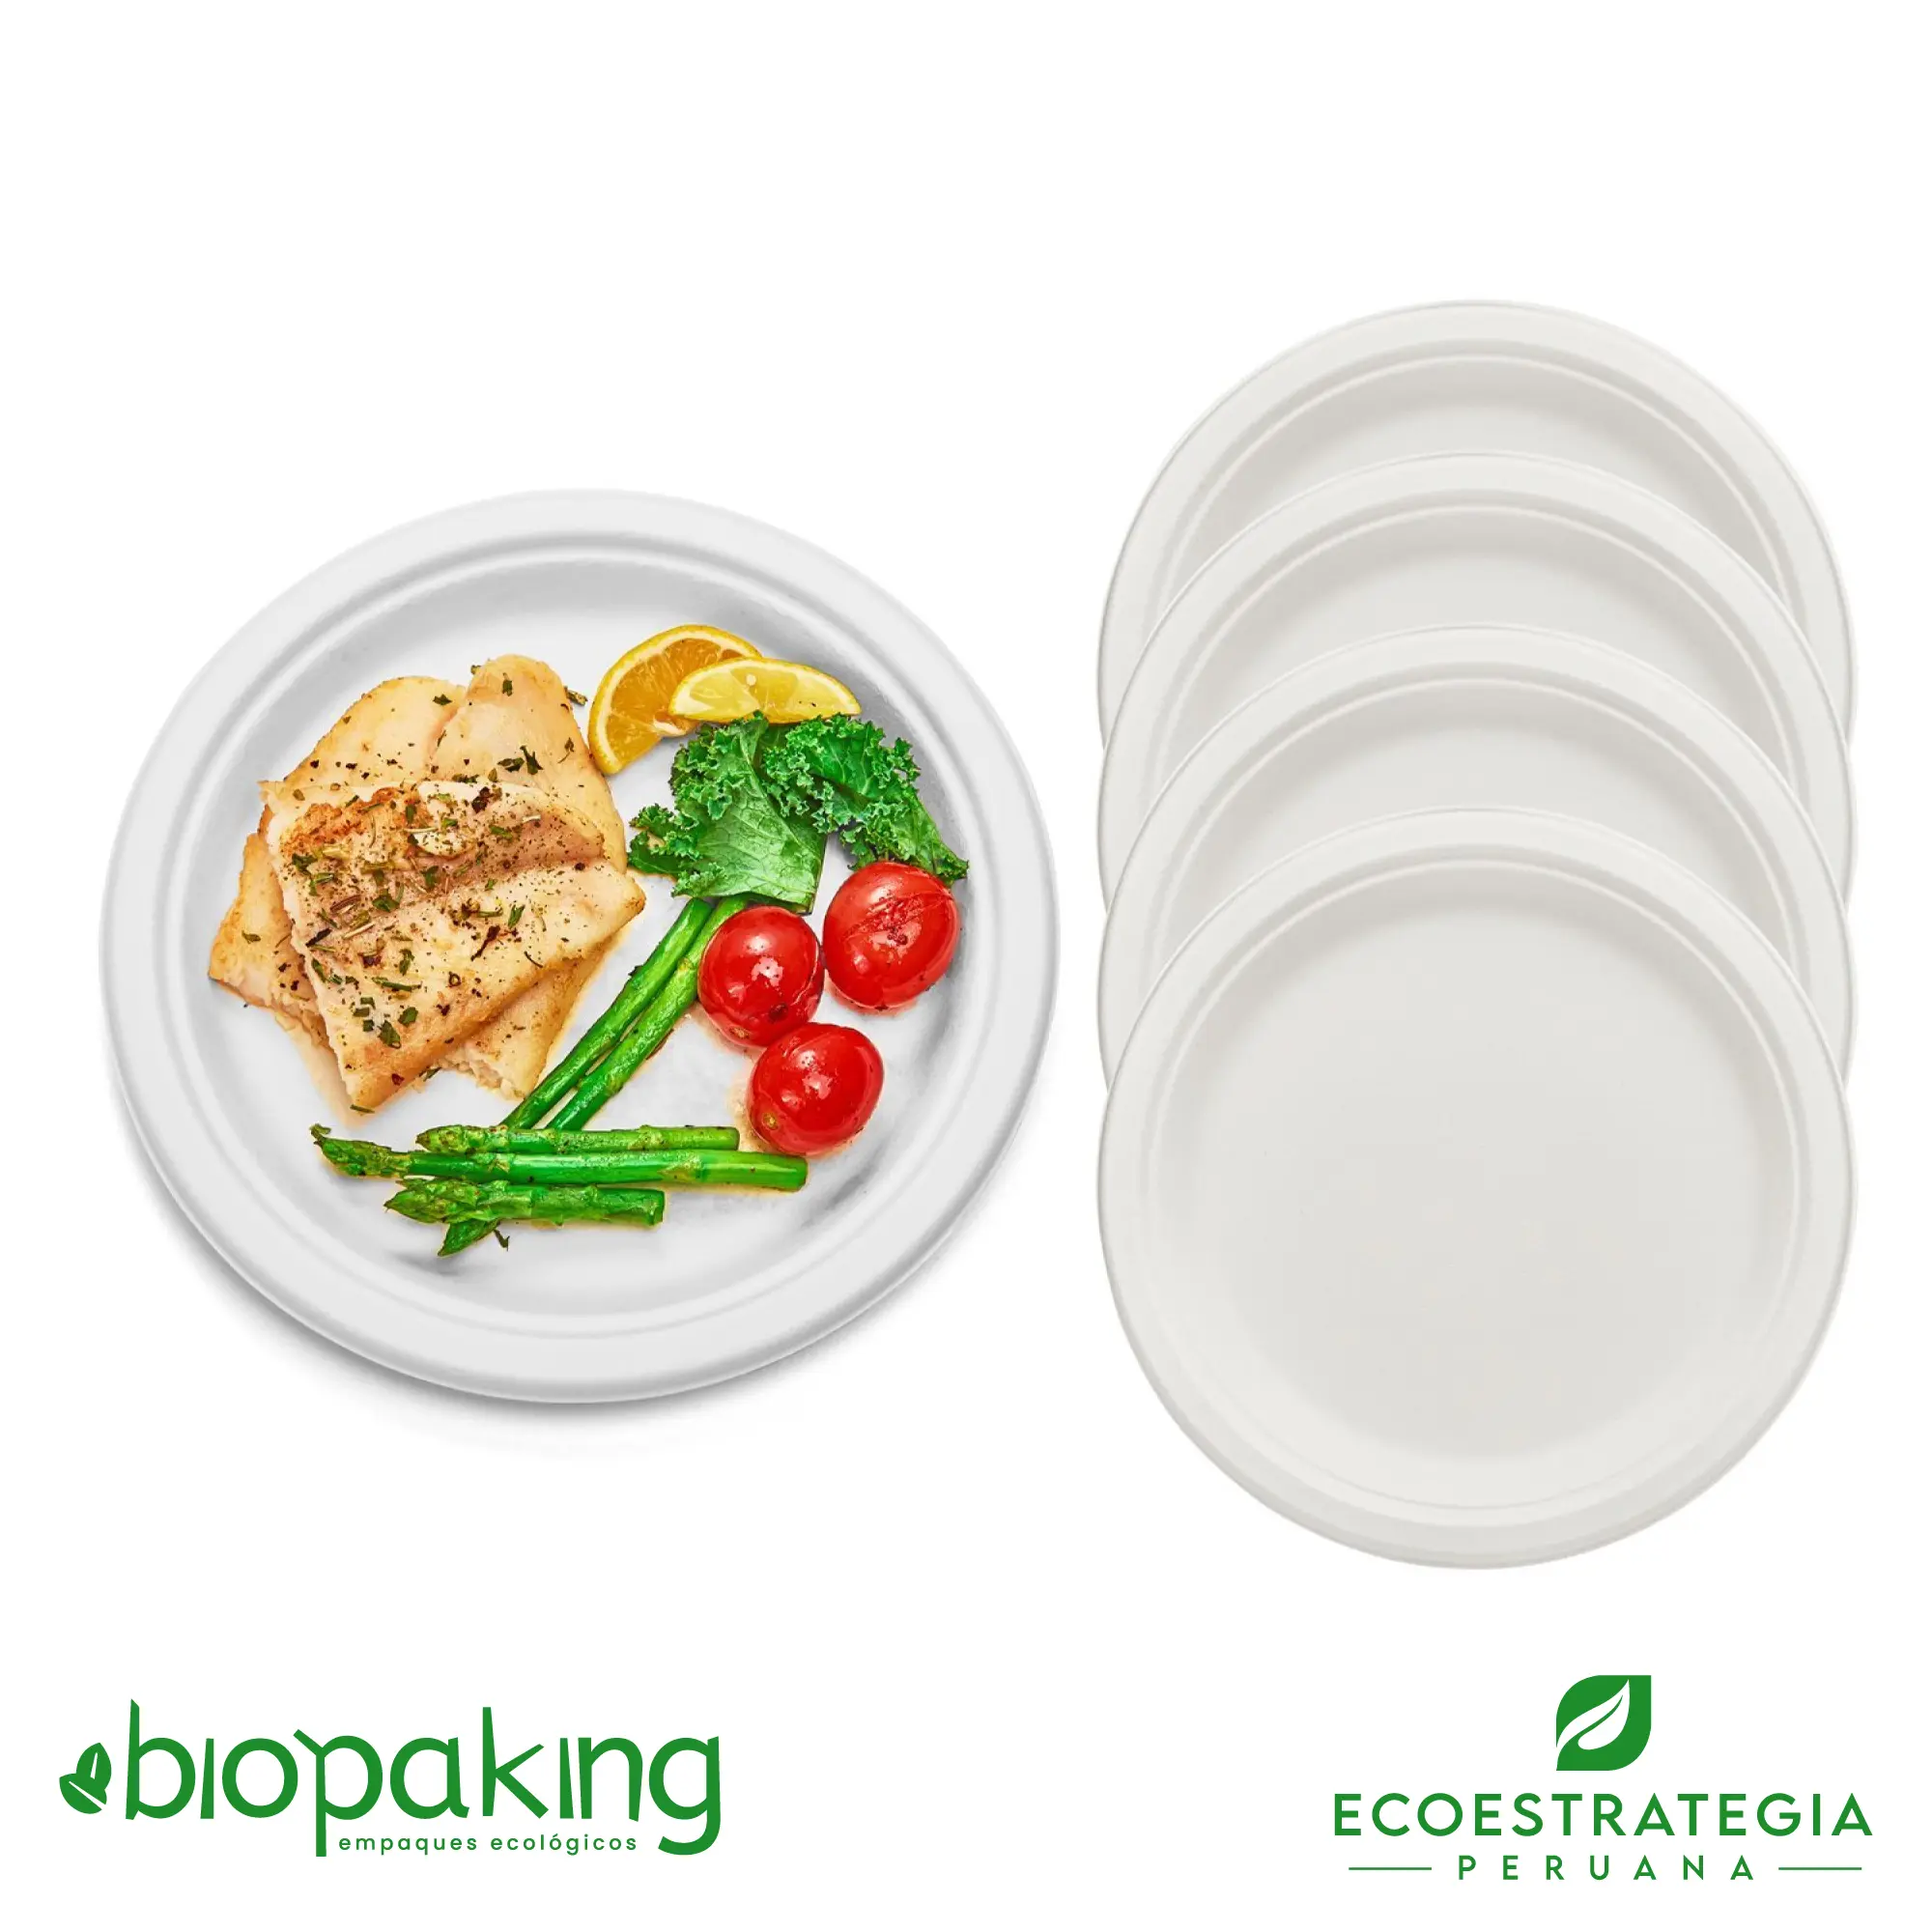 Es un plato biodegradable de 26 cm, fabricado a base de fibra de caña de azúcar. Apto para entradas, postres, tortas, hamburguesa y más. Contamos con stock de platos biodegradables, también los encuentras en las medidas. La mejor calidad en descartables biodegradables.